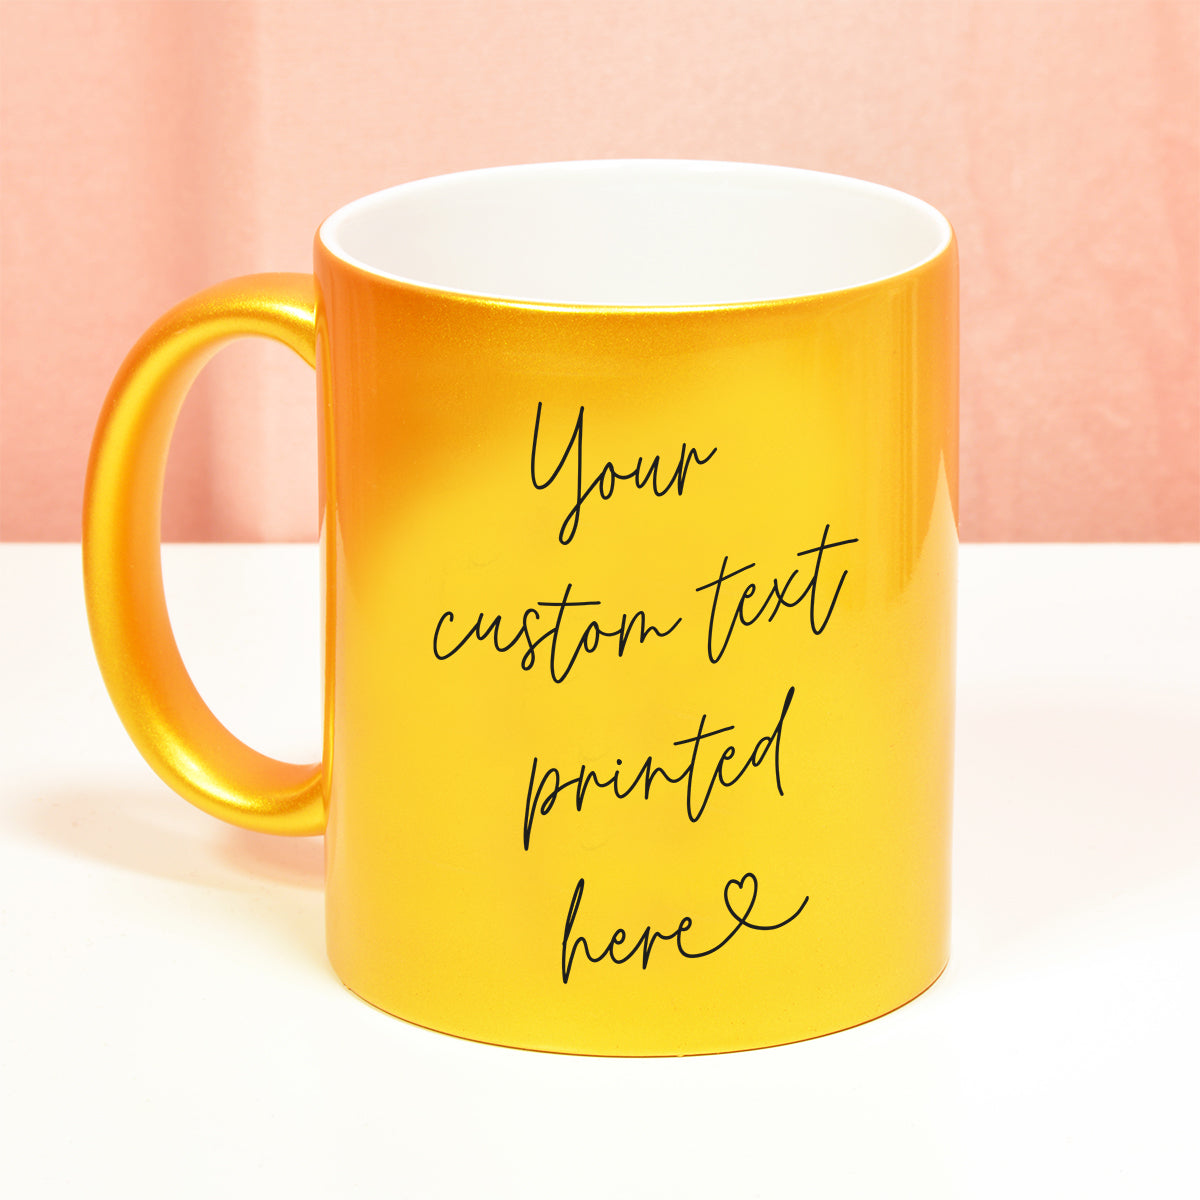 How to Design Your Own Custom Mug